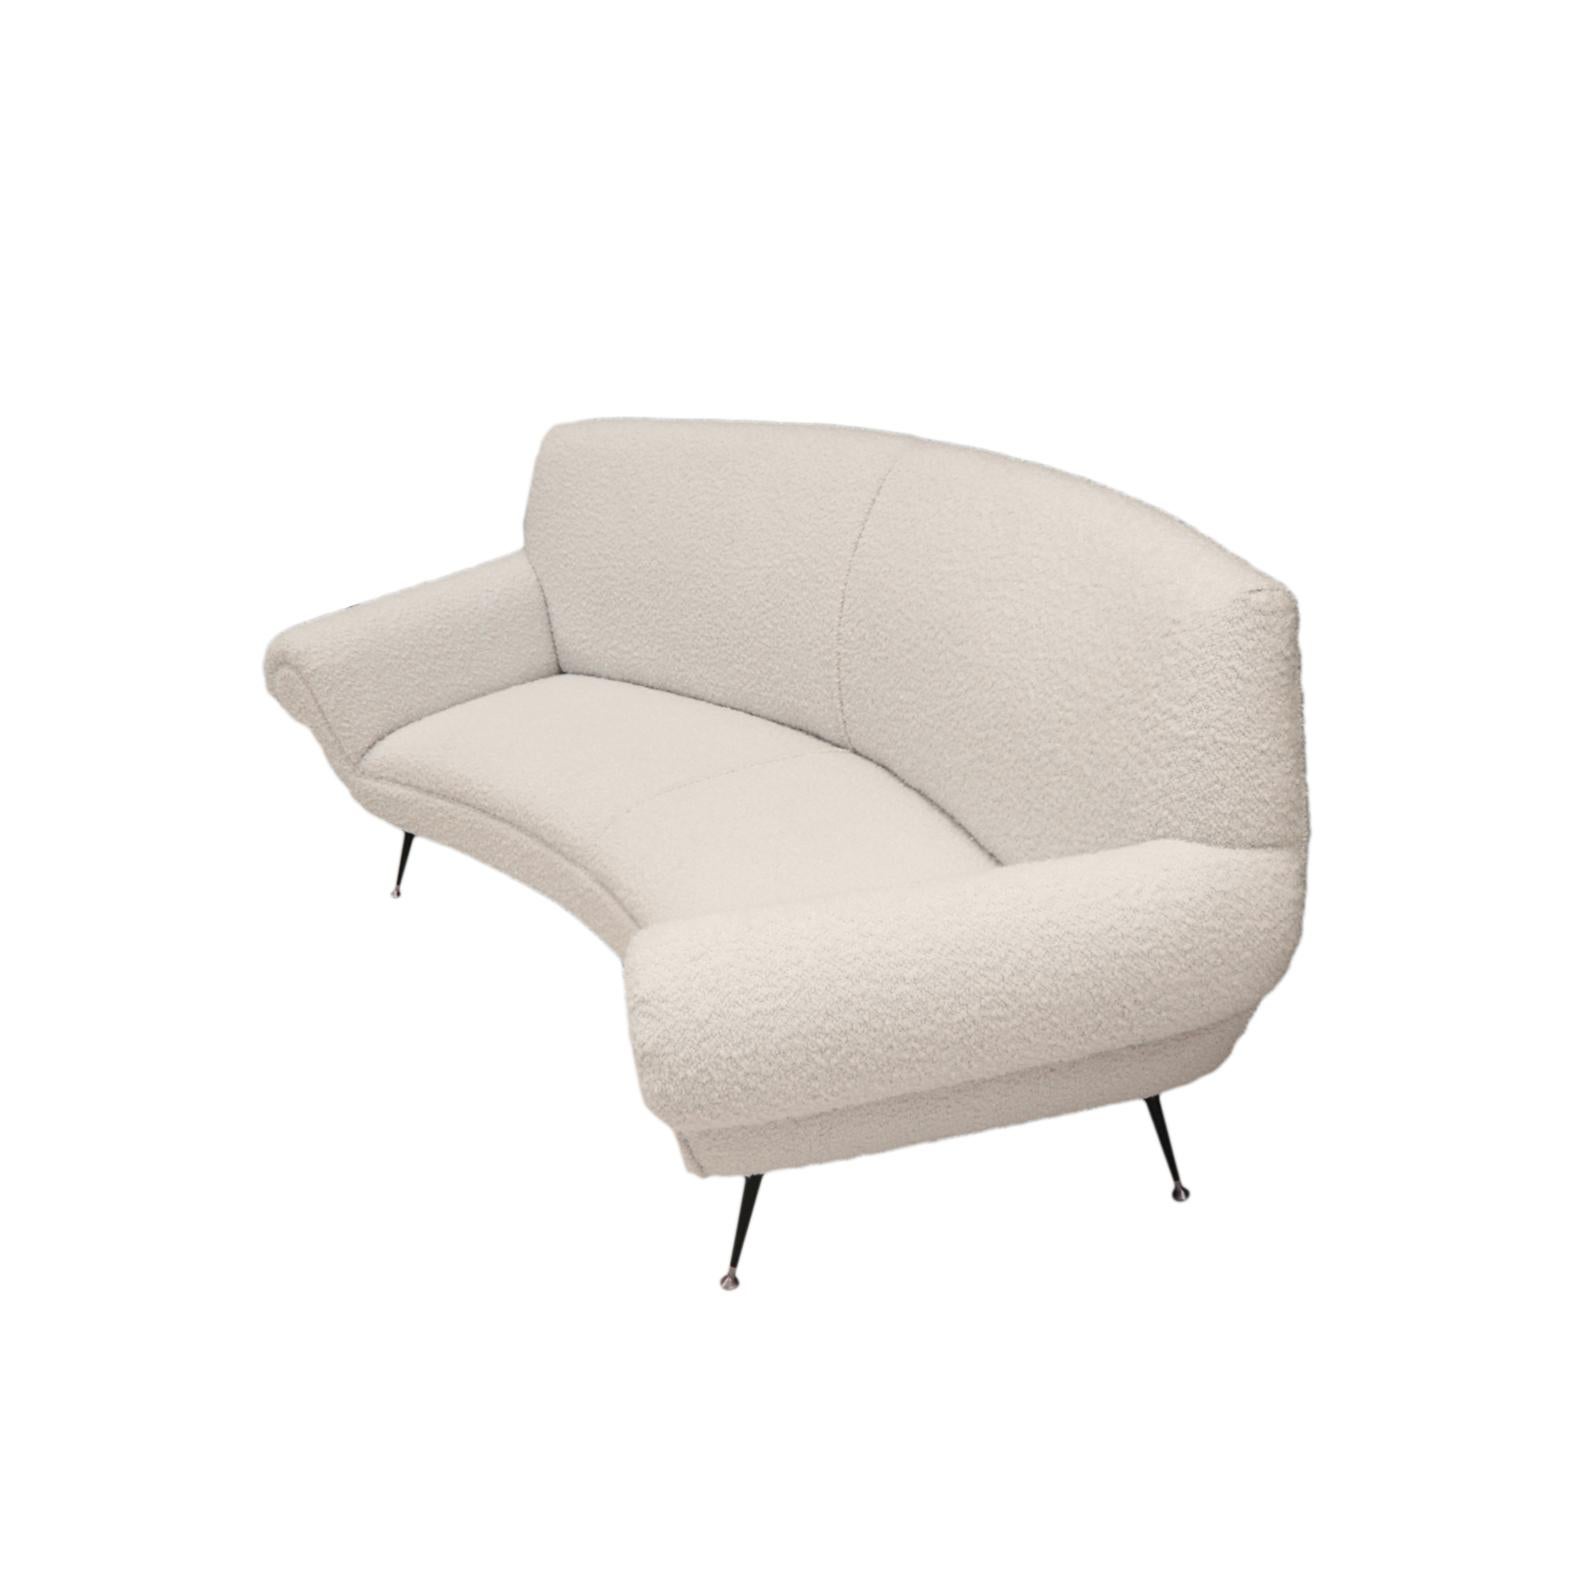 Das weiße Bouclé-Sofa, das von der renommierten italienischen Designerin Gigi Radice entworfen und von Minotti produziert wurde, ist eine perfekte Mischung aus Handwerkskunst und zeitgenössischem Design. Radice, der für seine ikonischen Beiträge zu